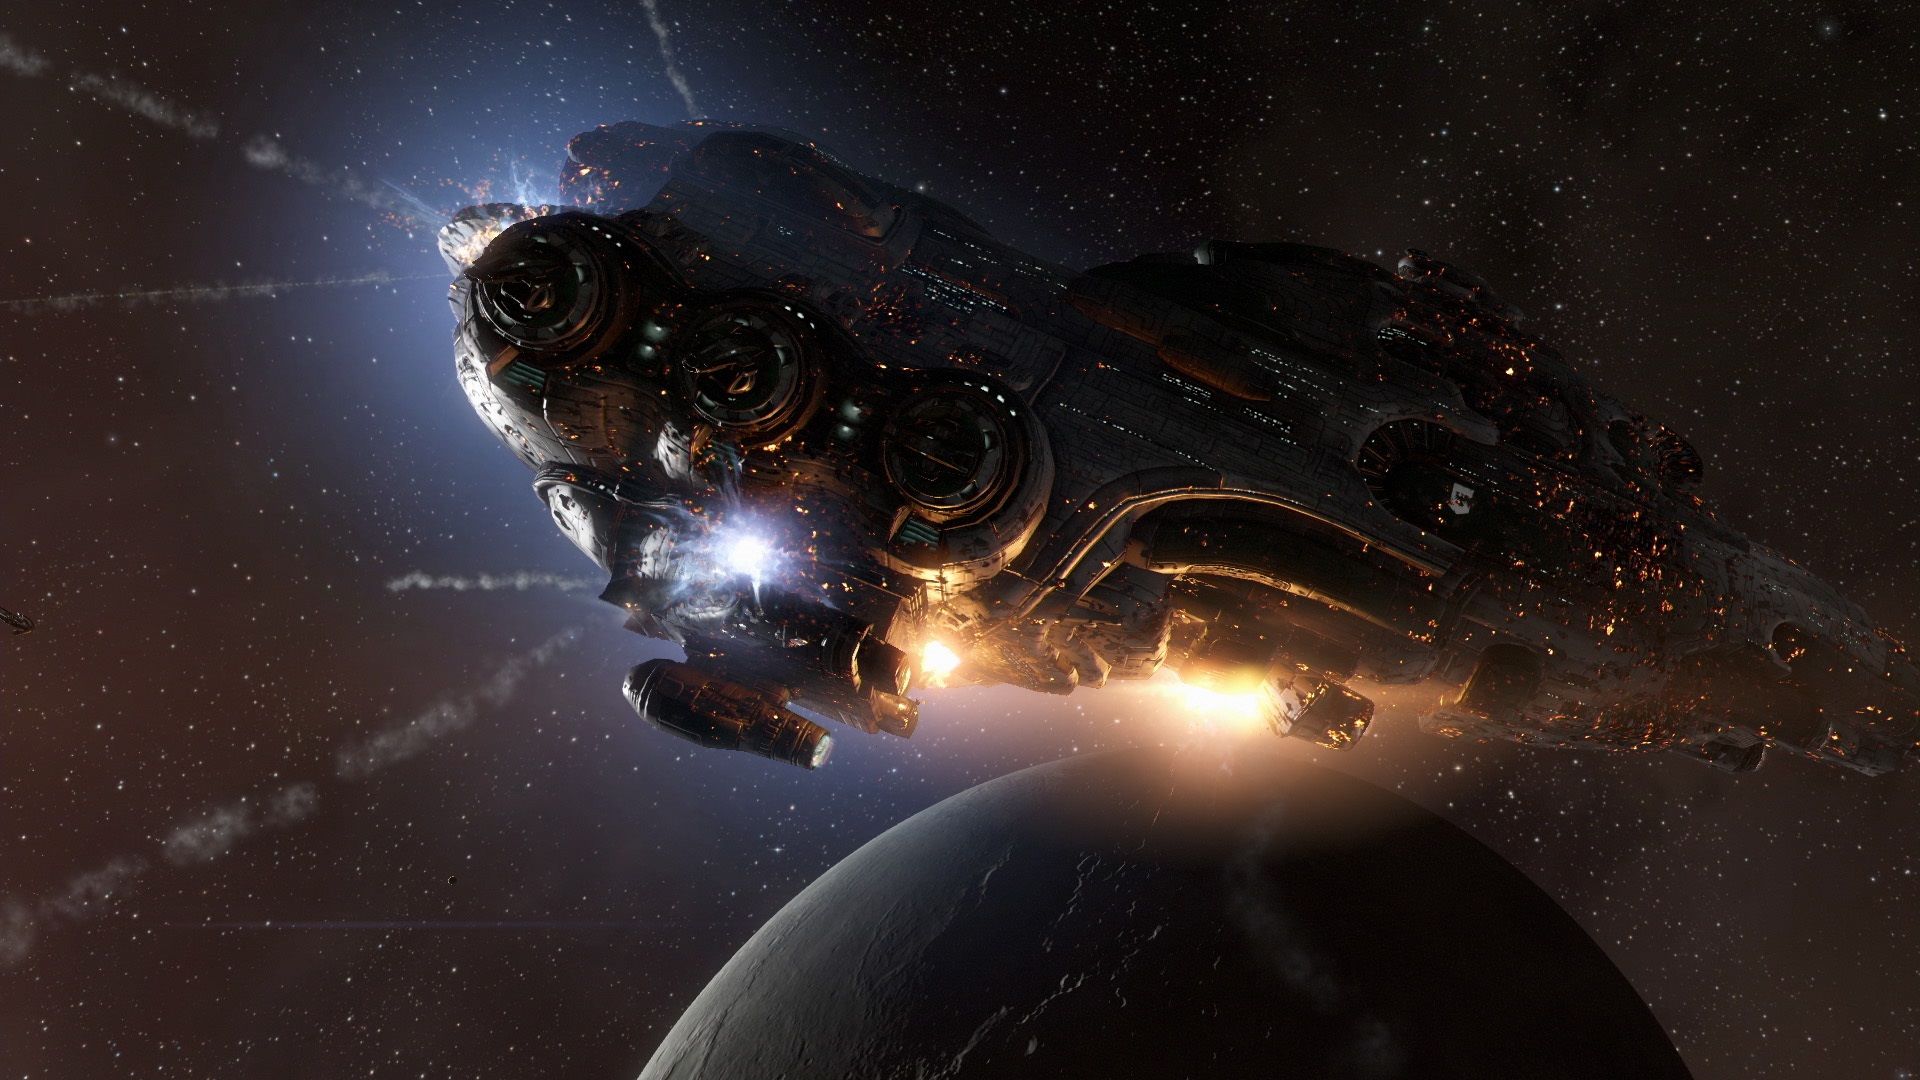 Game PC gratis terbaik: Eve Online. Gambar menunjukkan kapal besar terbang melalui ruang